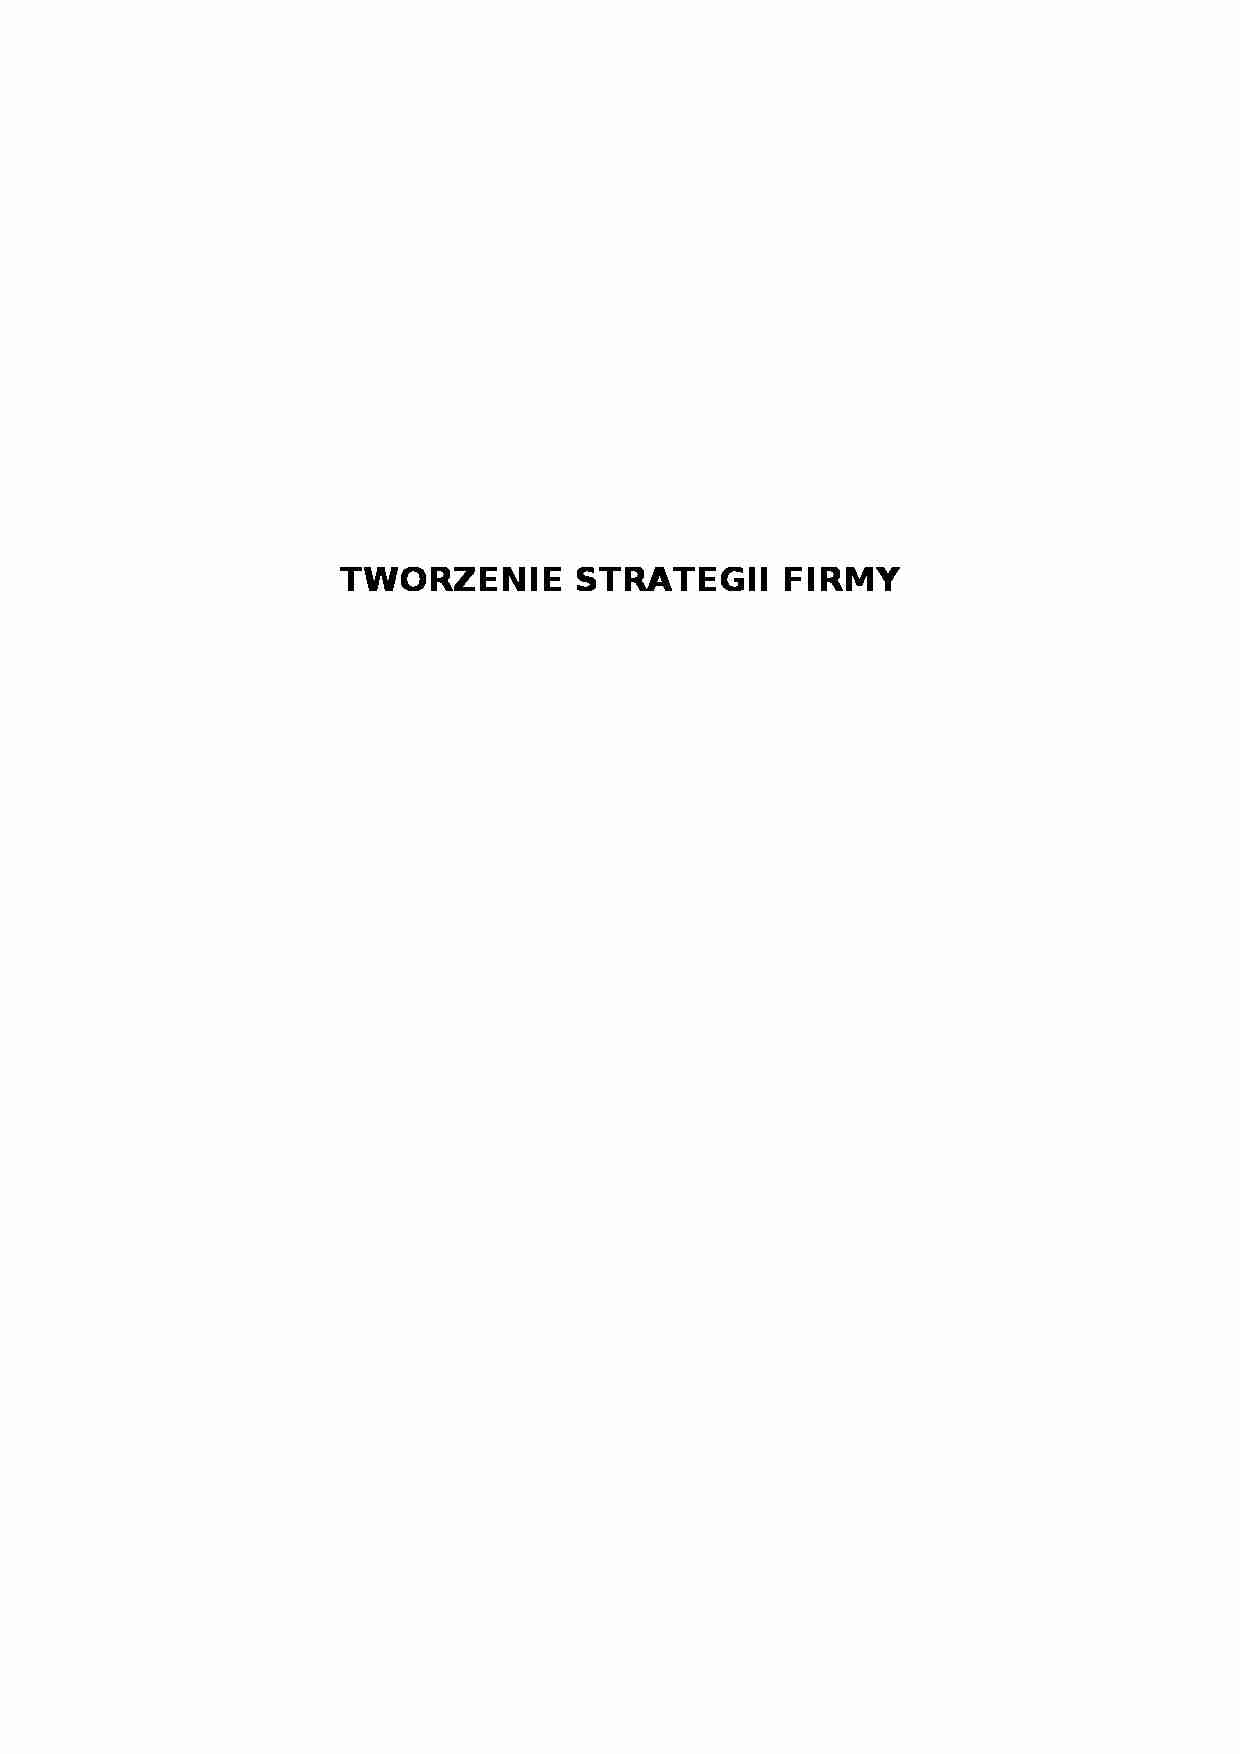 Tworzenie strategii firmy - strona 1